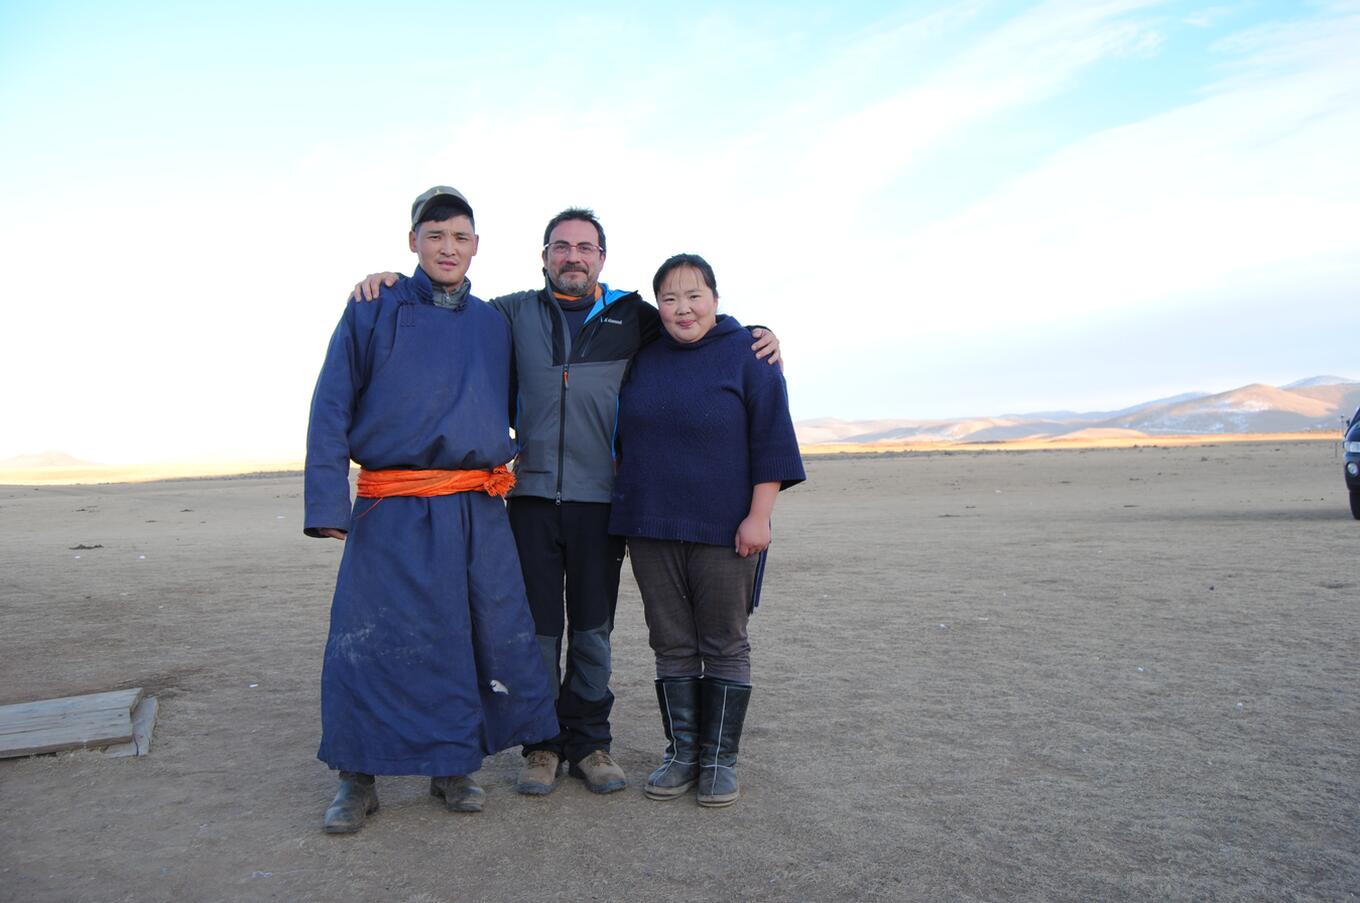 Tras el Ártico, Mongolia es el destino preferido de Francesc Bailón. En esta imagen, con los nómadas del desierto del Gobi.